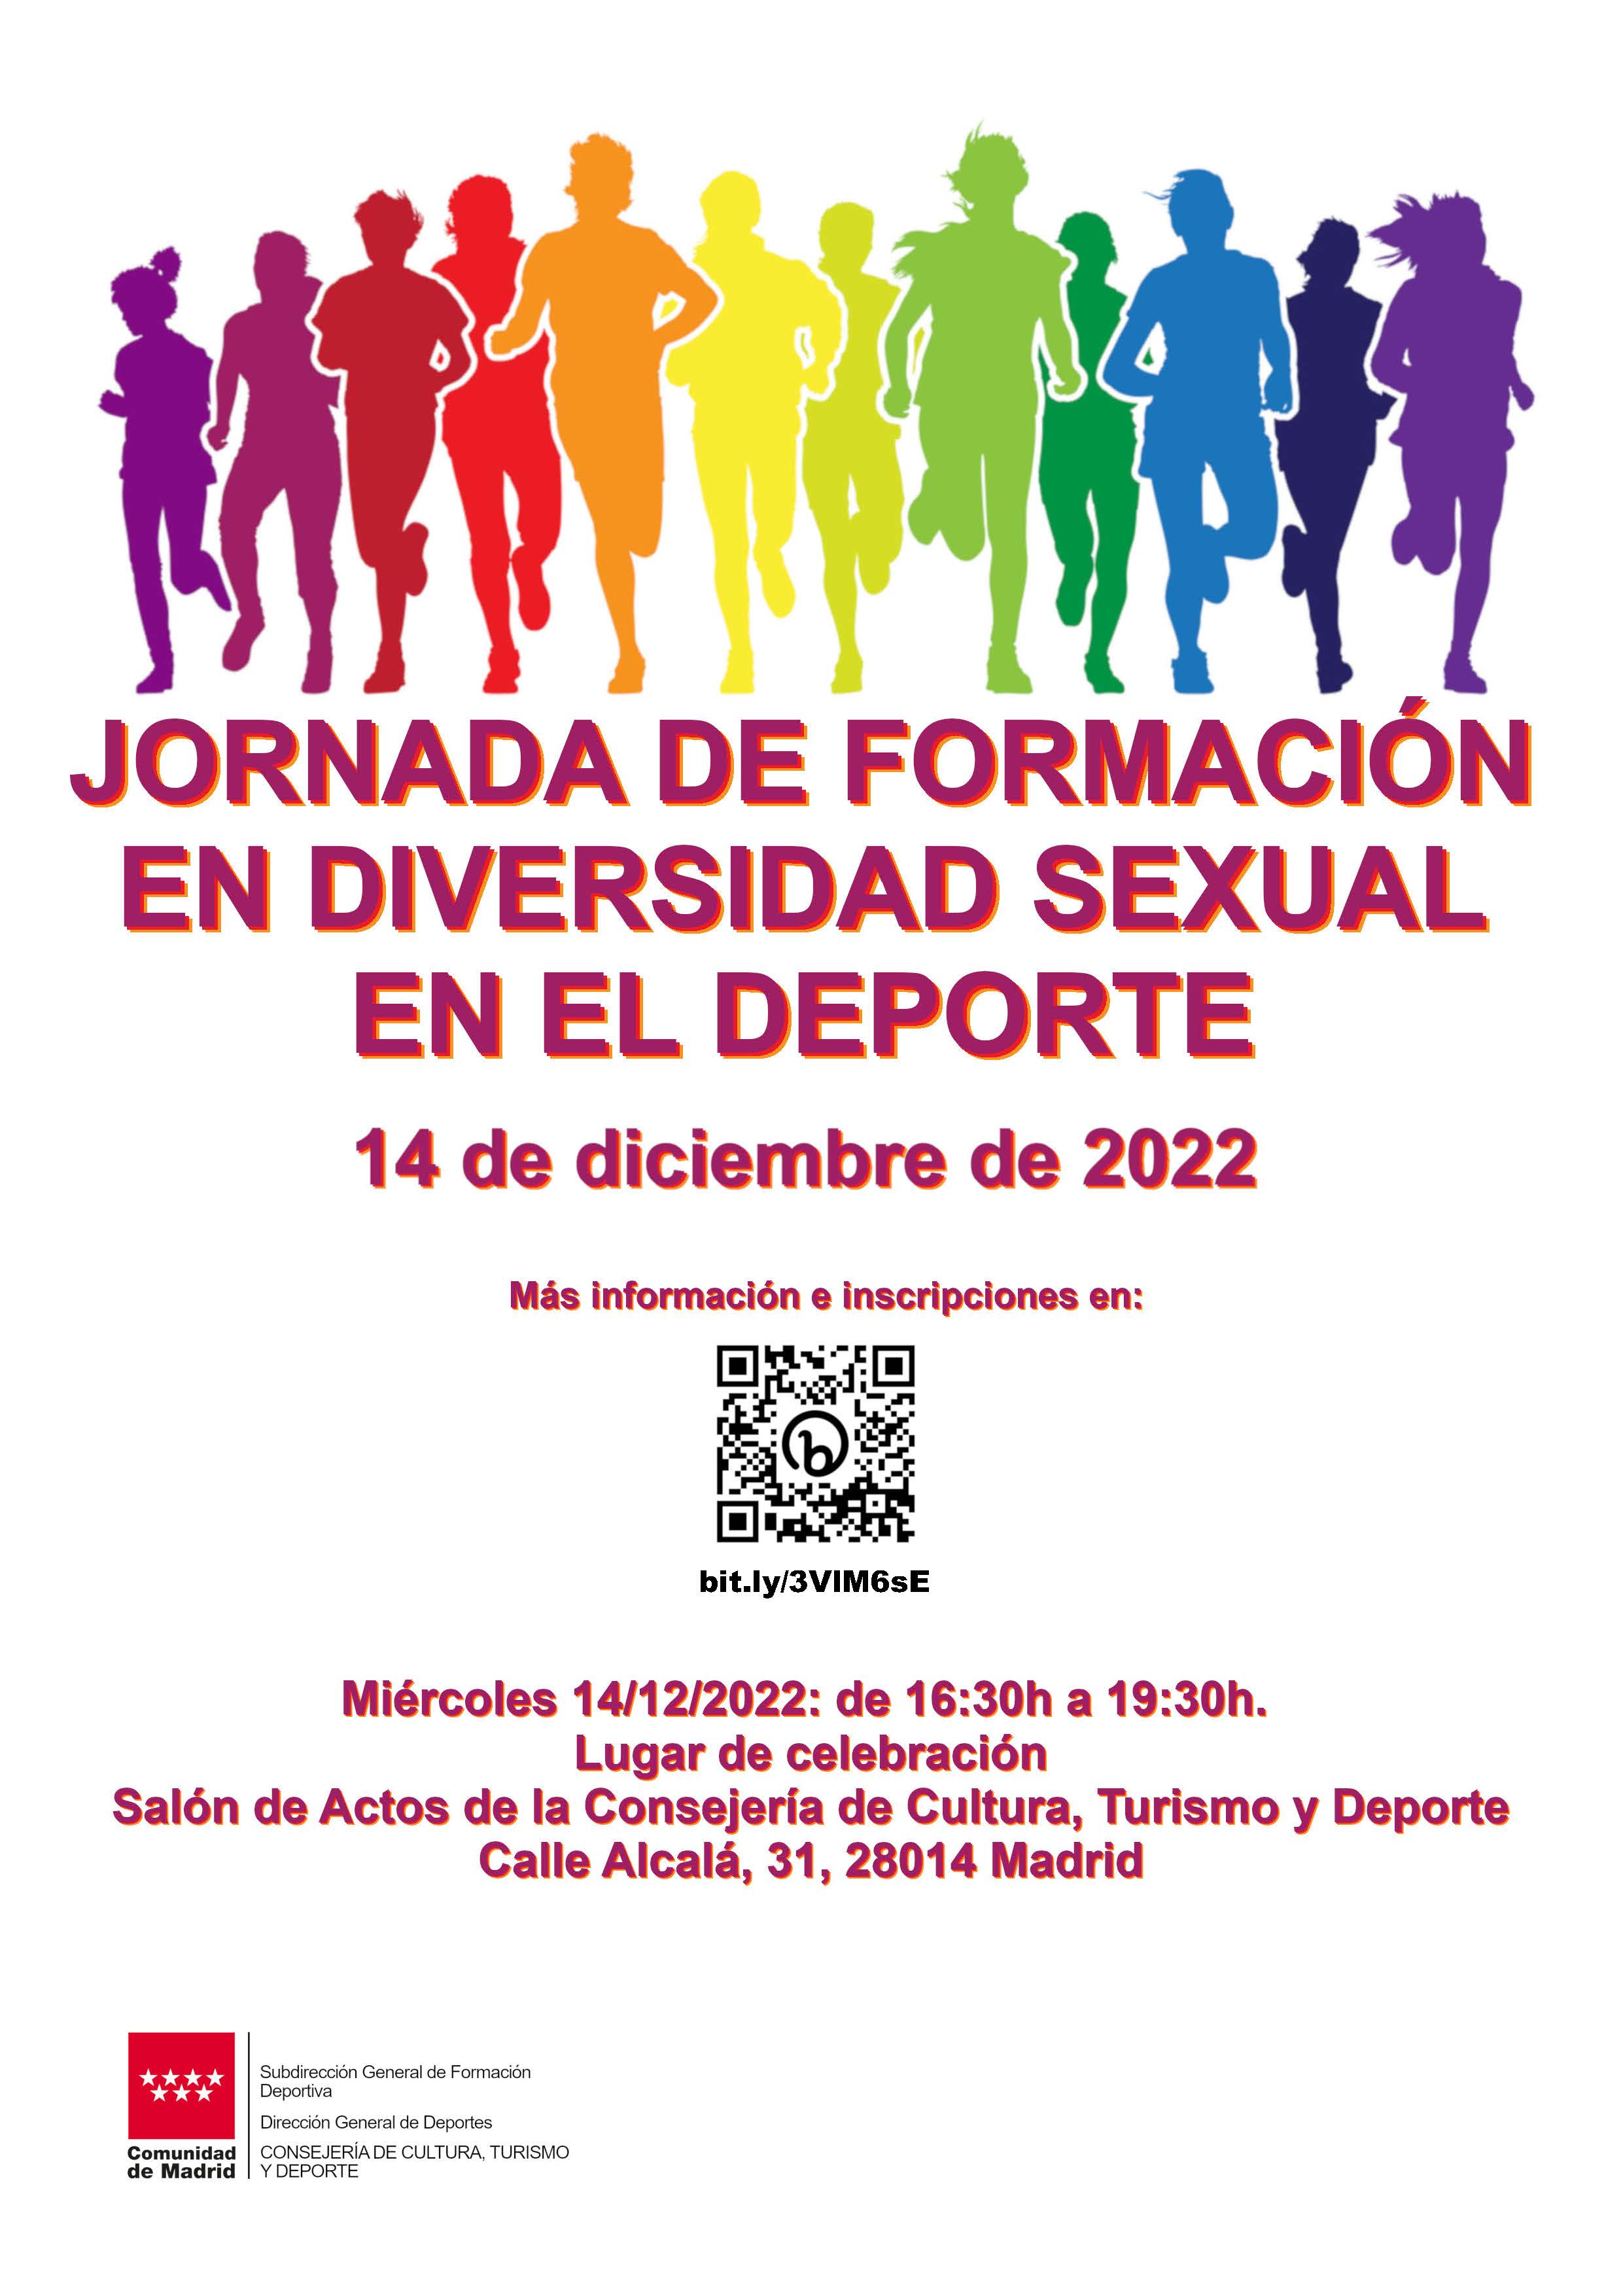 La Comunidad de Madrid organiza la Jornada Formativa en Diversidad Sexual en el Deporte